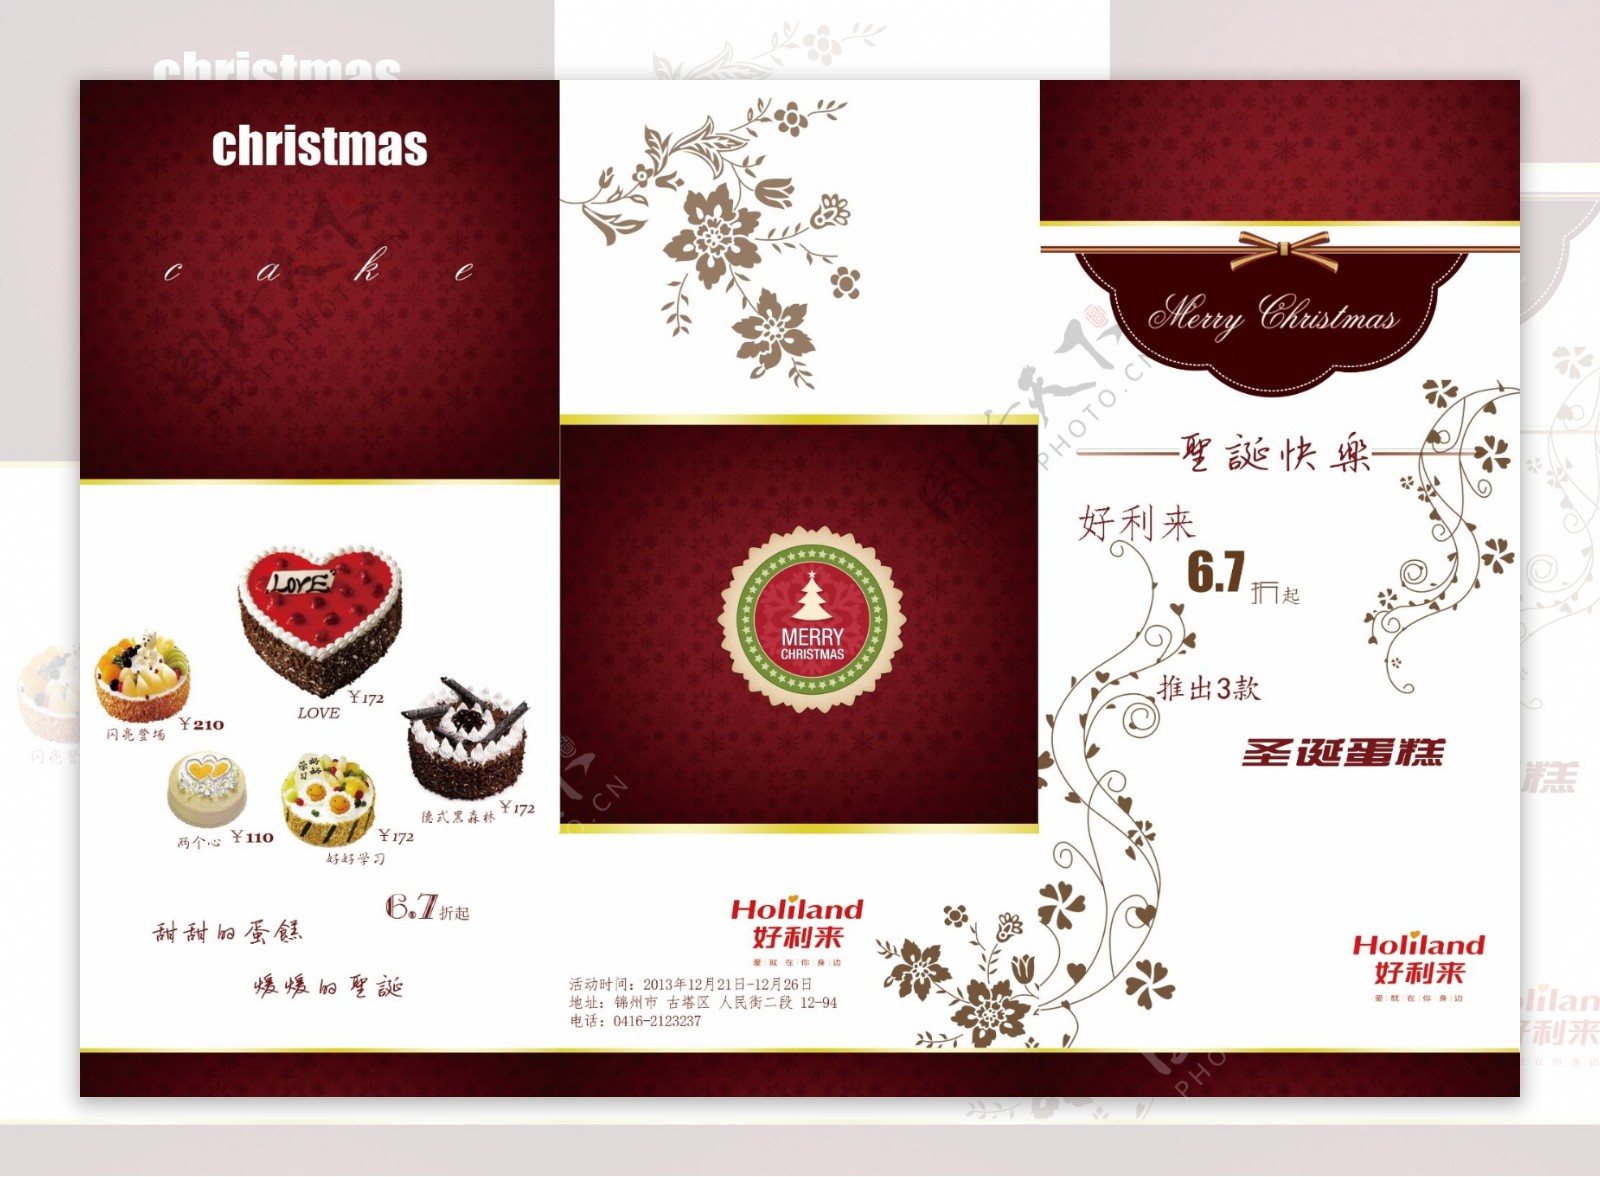 圣诞节宣传画册设计图片